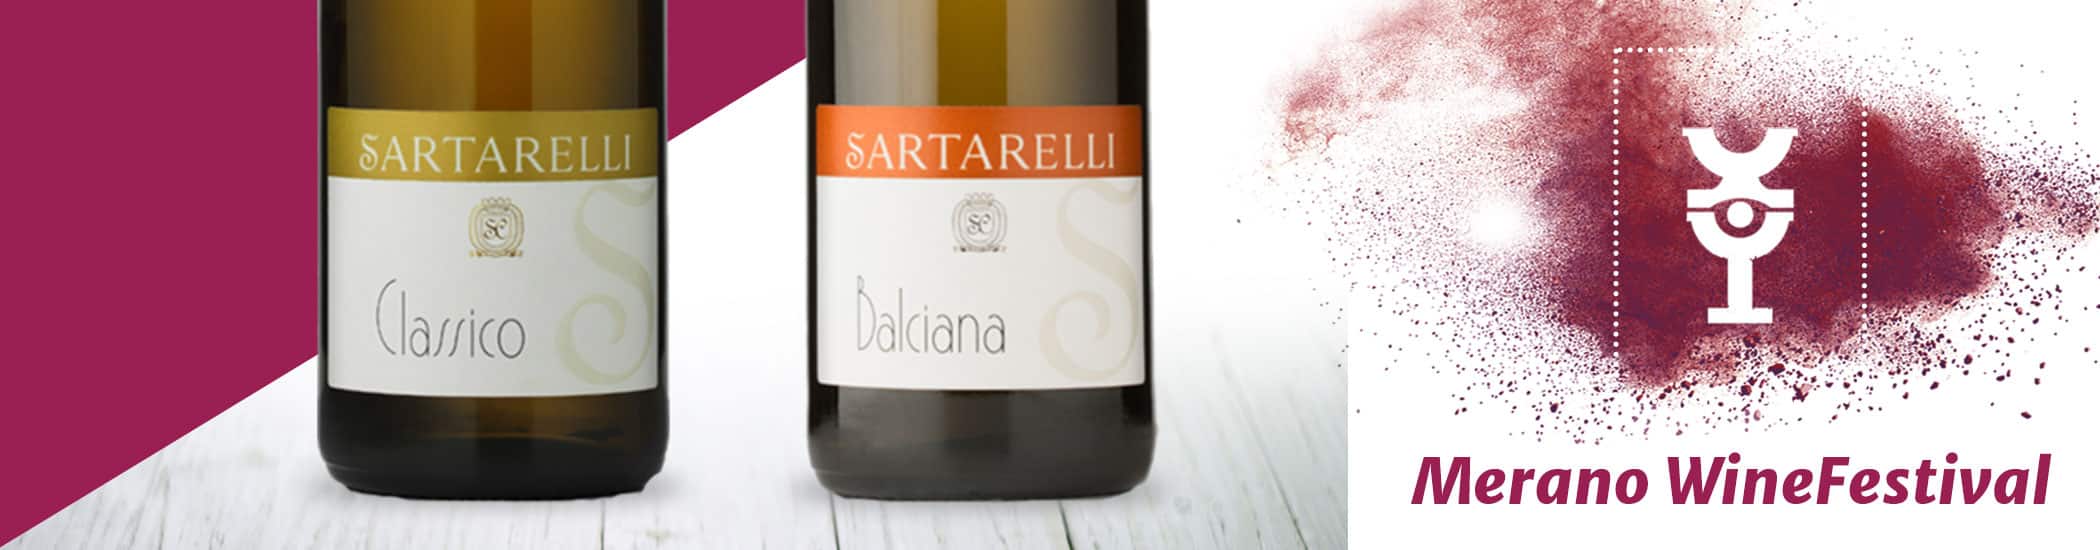 Sartarelli Classico e Balciana - Merano Wine Festival